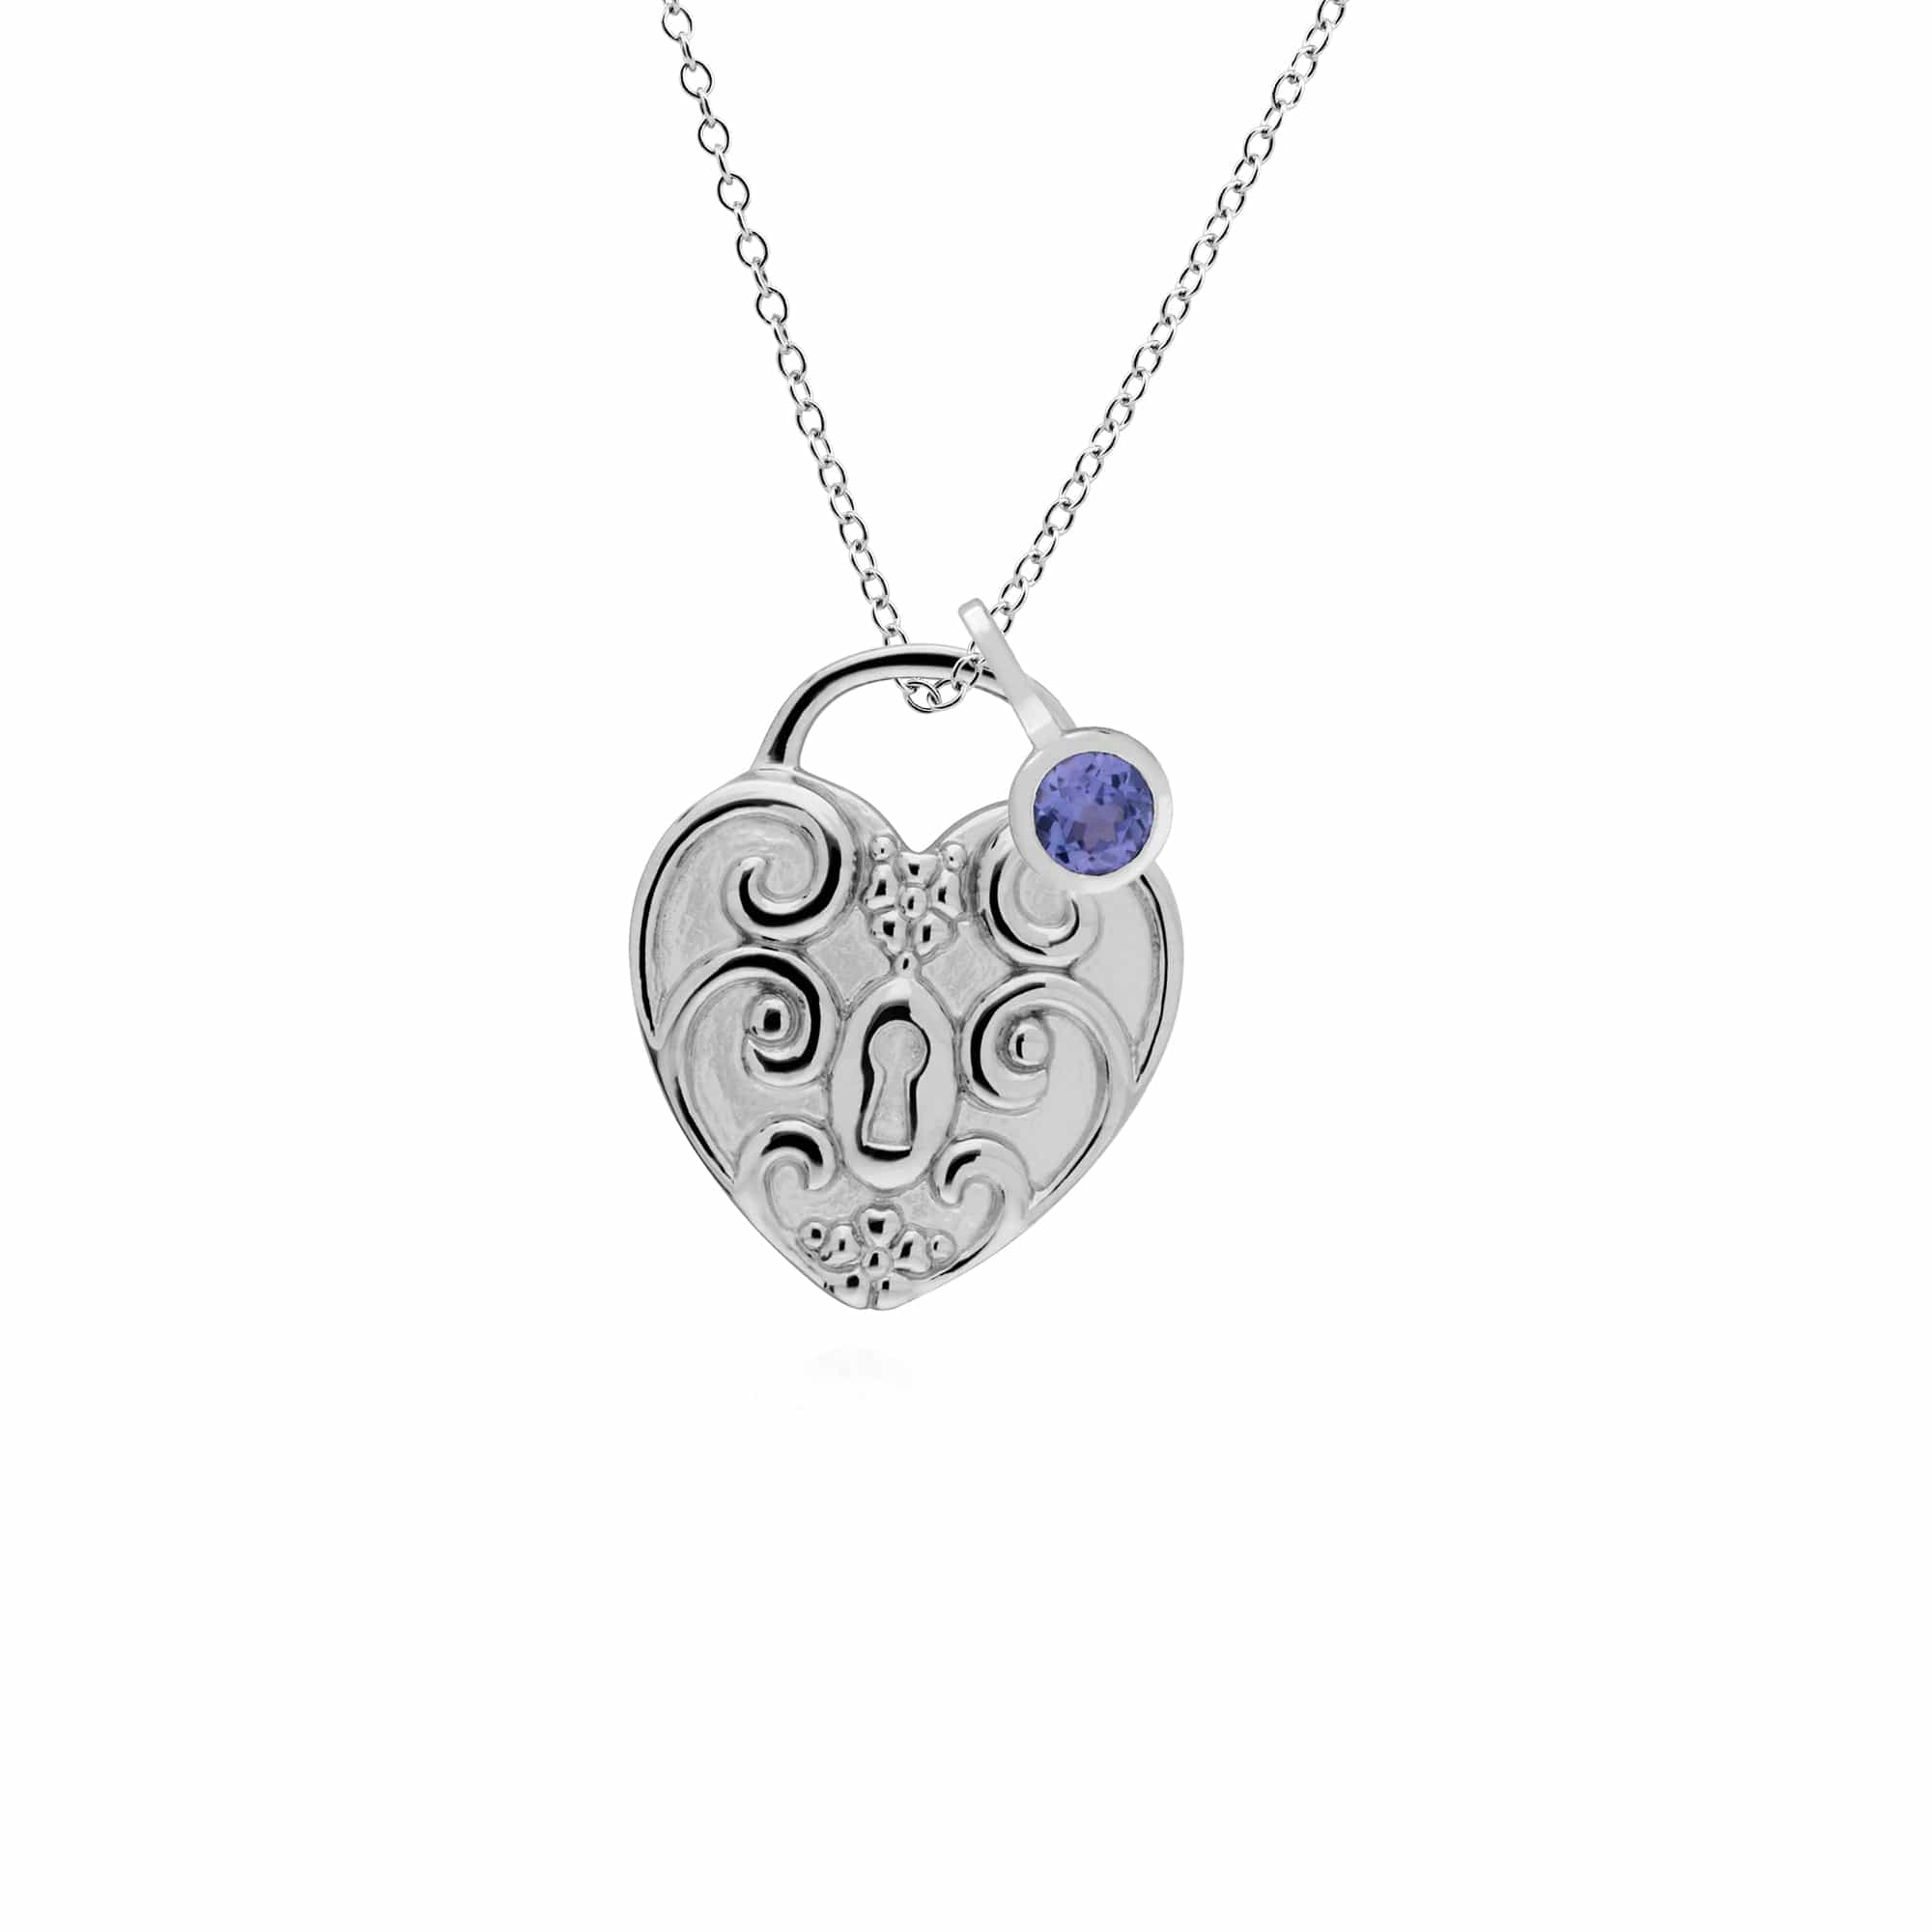 270P027606925-270P026601925 Classic Swirl Heart Lock Pendant & Tanzanite Charm in 925 Sterling Silver 1